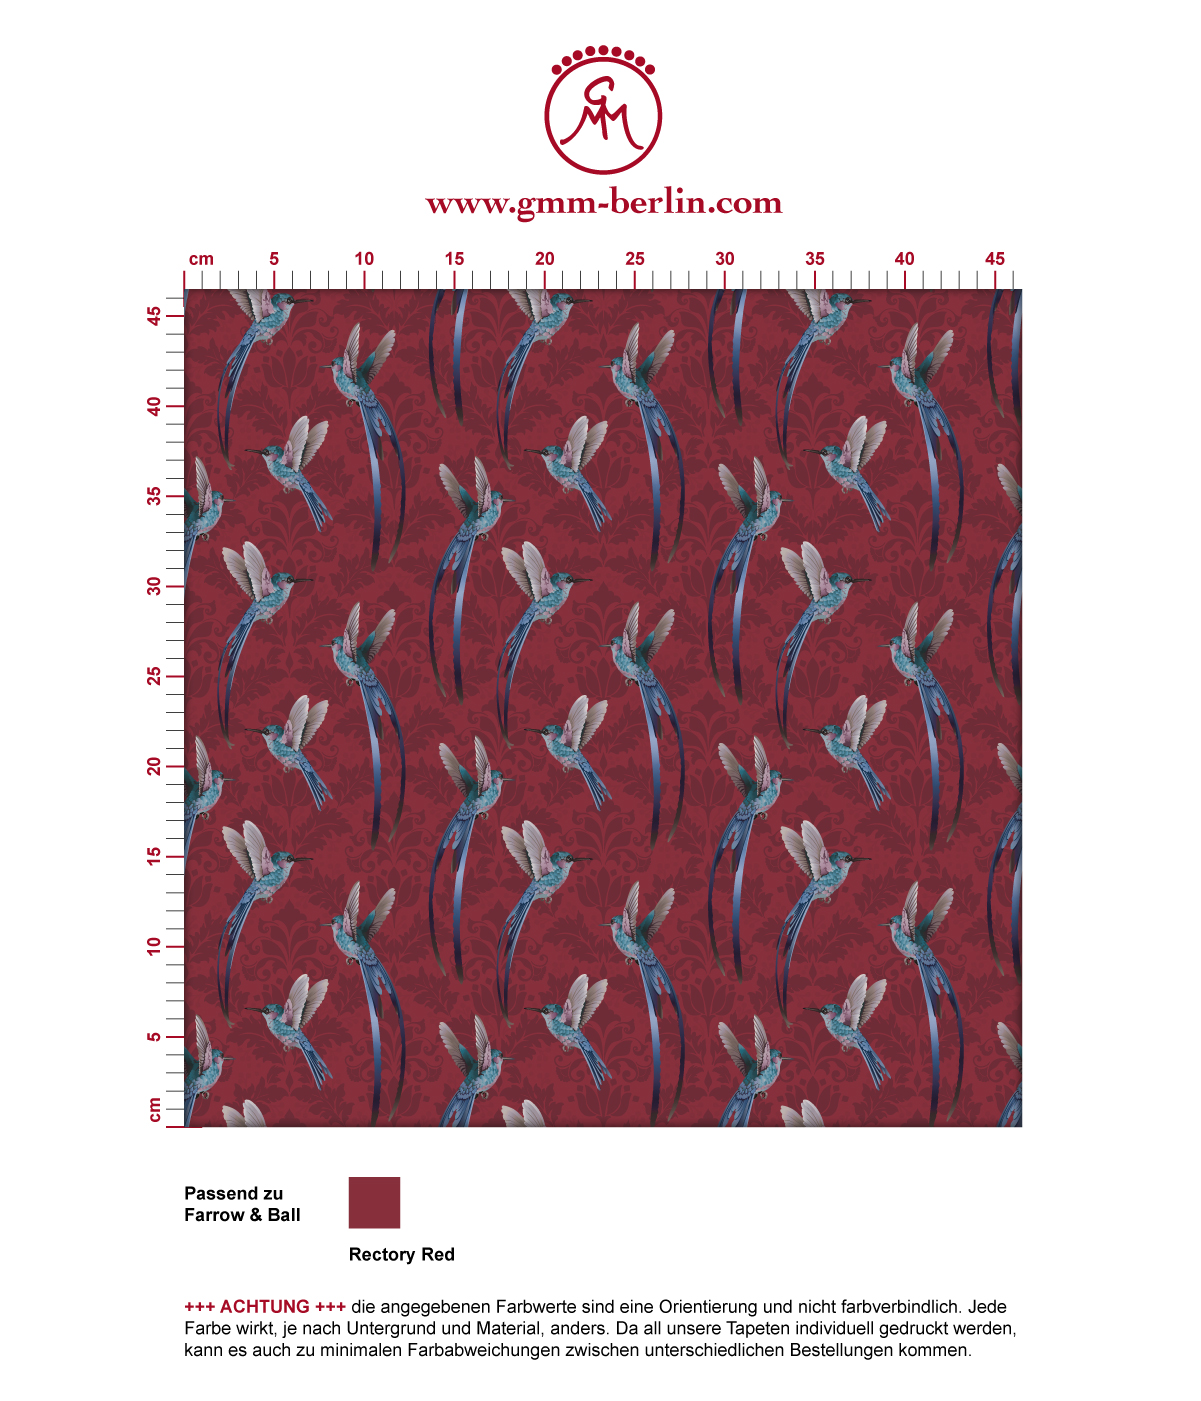 Kolibri Tapete "Damast-Elfen" mit klassischem Damast Muster in rot angepasst an Farrow & Ball Wandfarben. Aus dem GMM-BERLIN.com Sortiment: Schöne Tapeten in der Farbe: dunkel rot